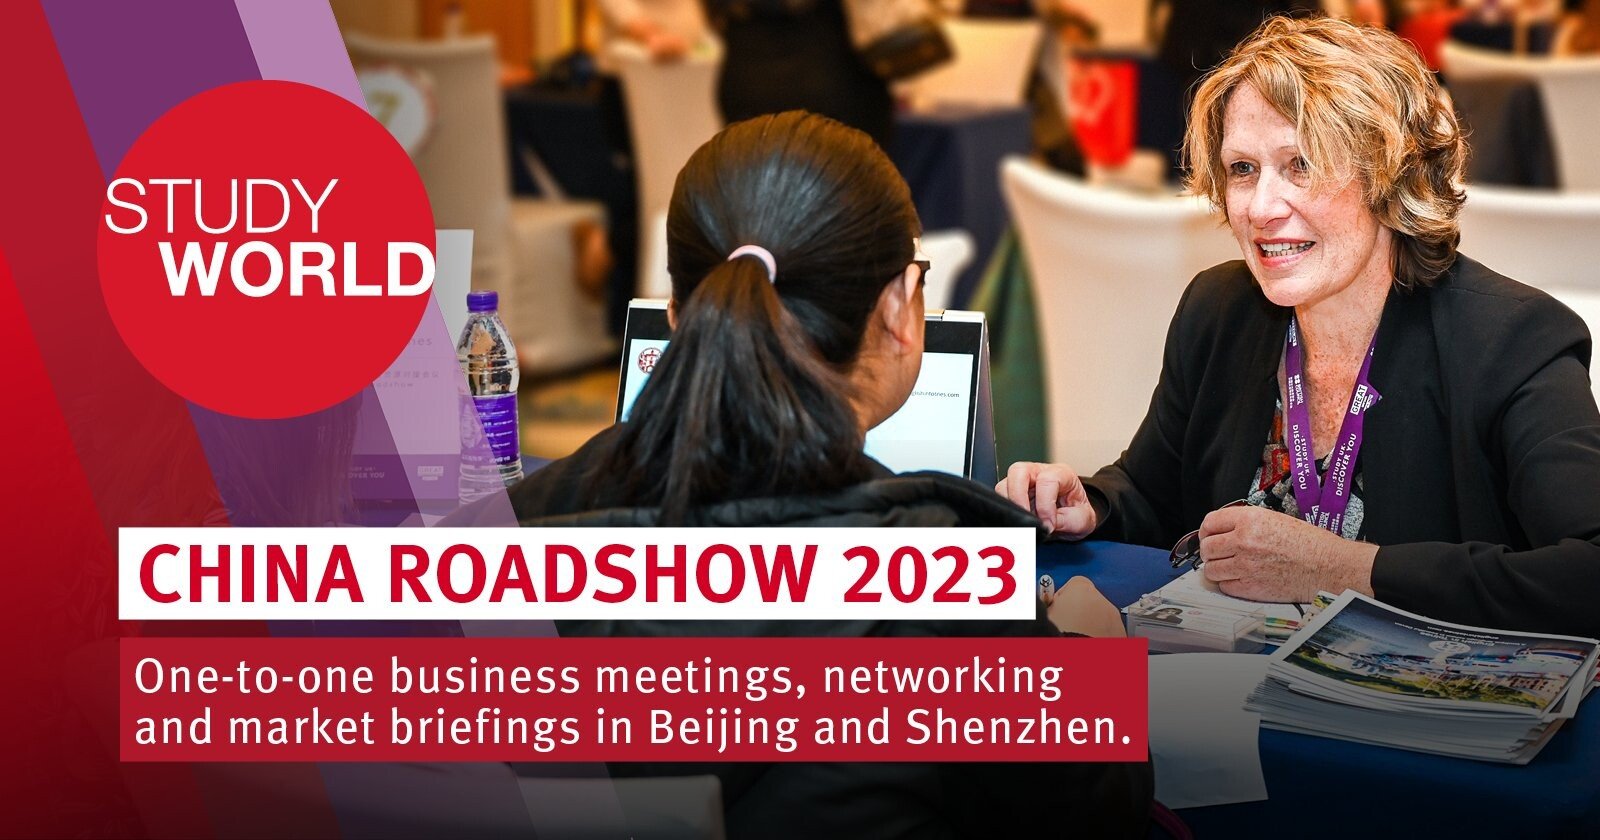 StudyWorld China Roadshow 2023